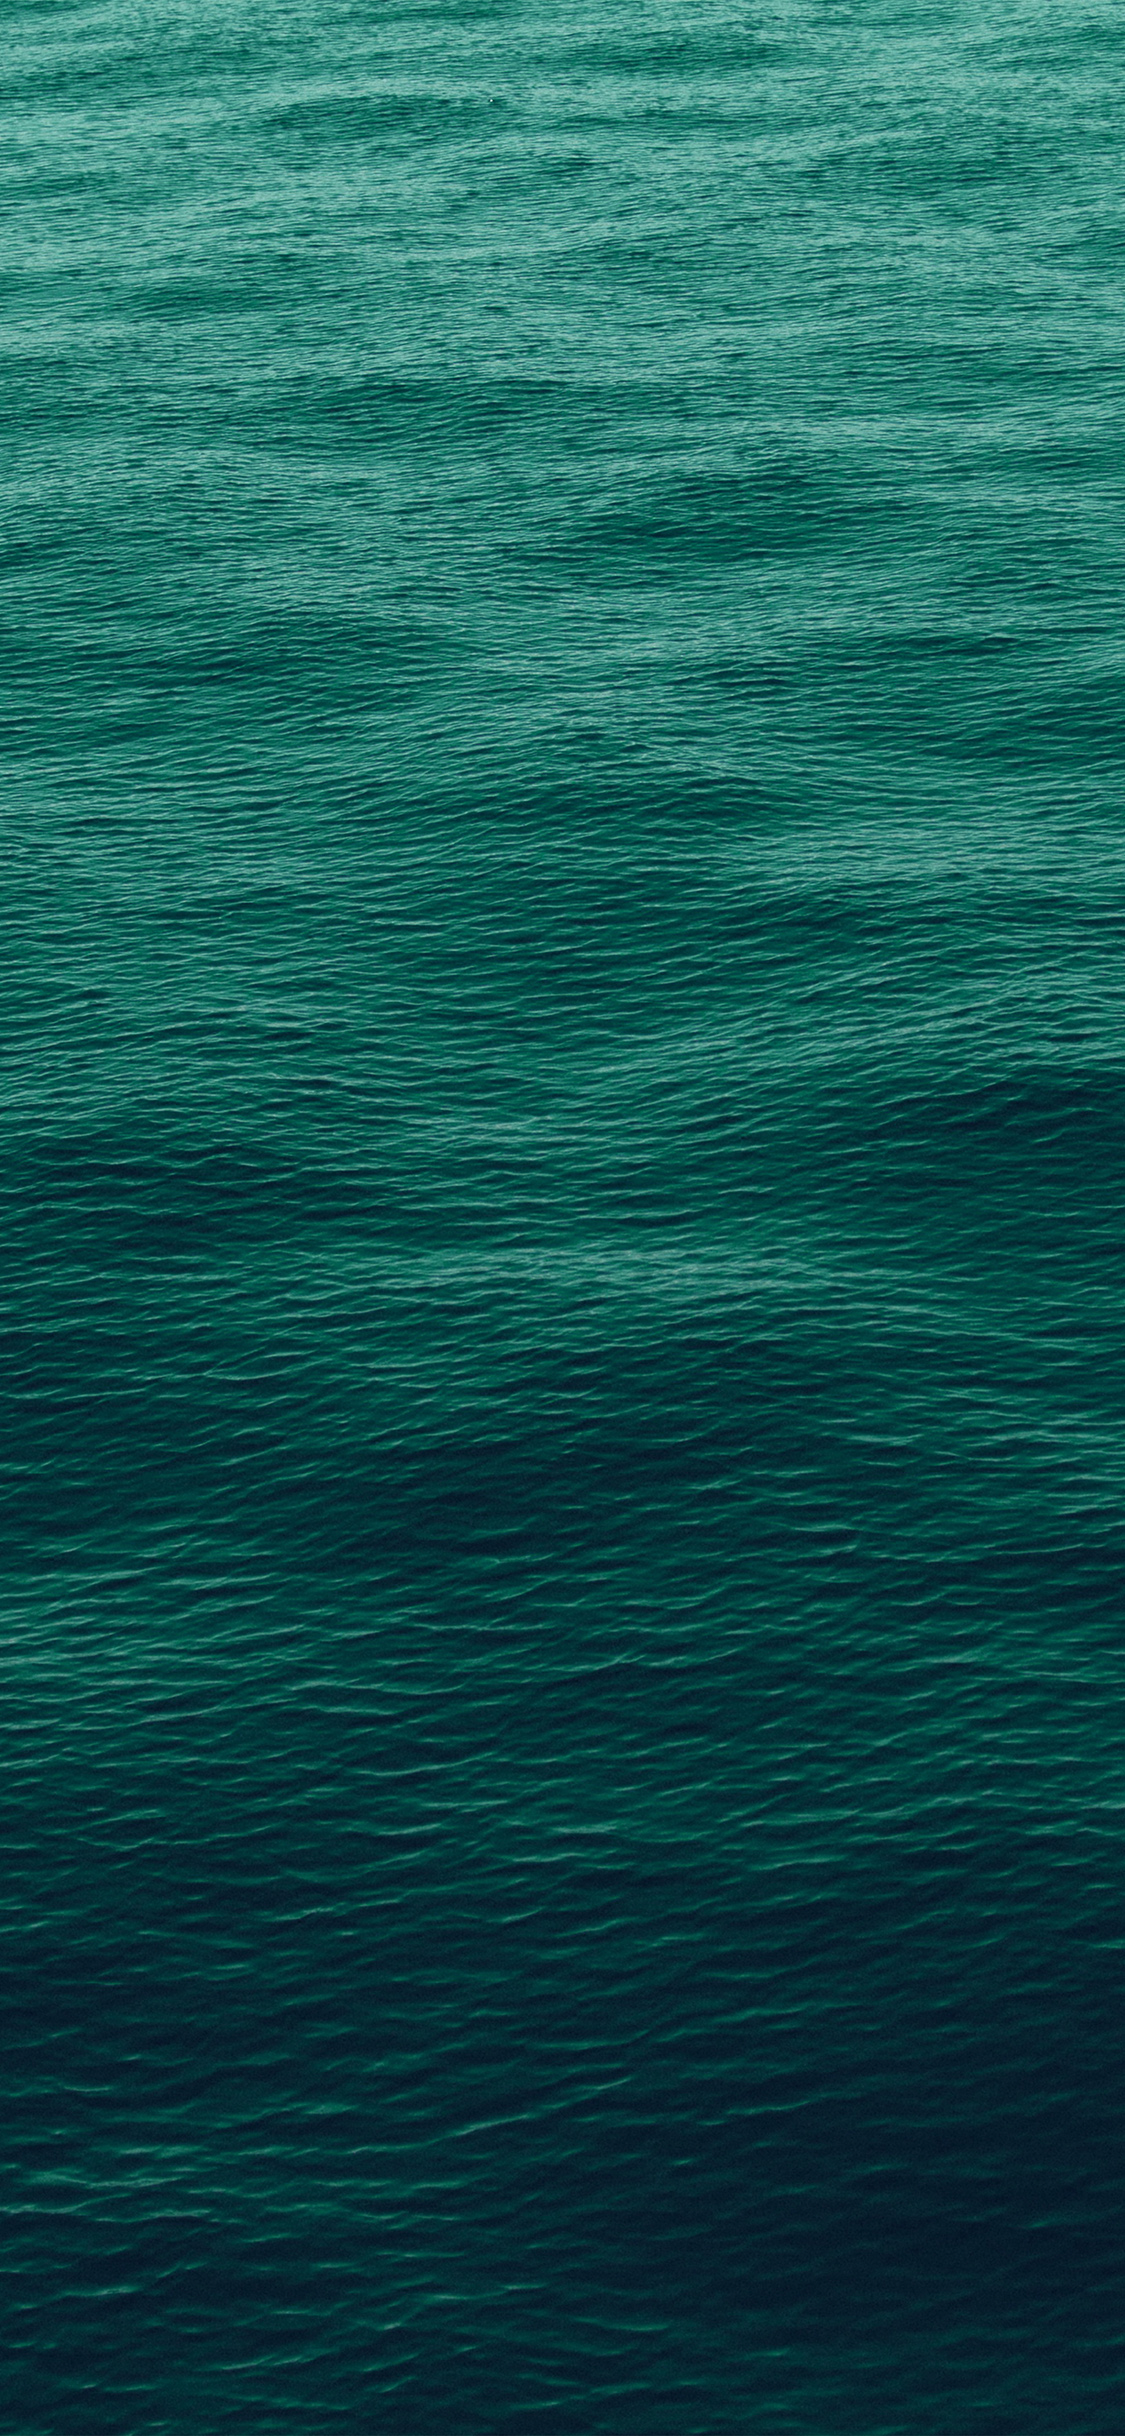 wave green ocean sea blue pattern